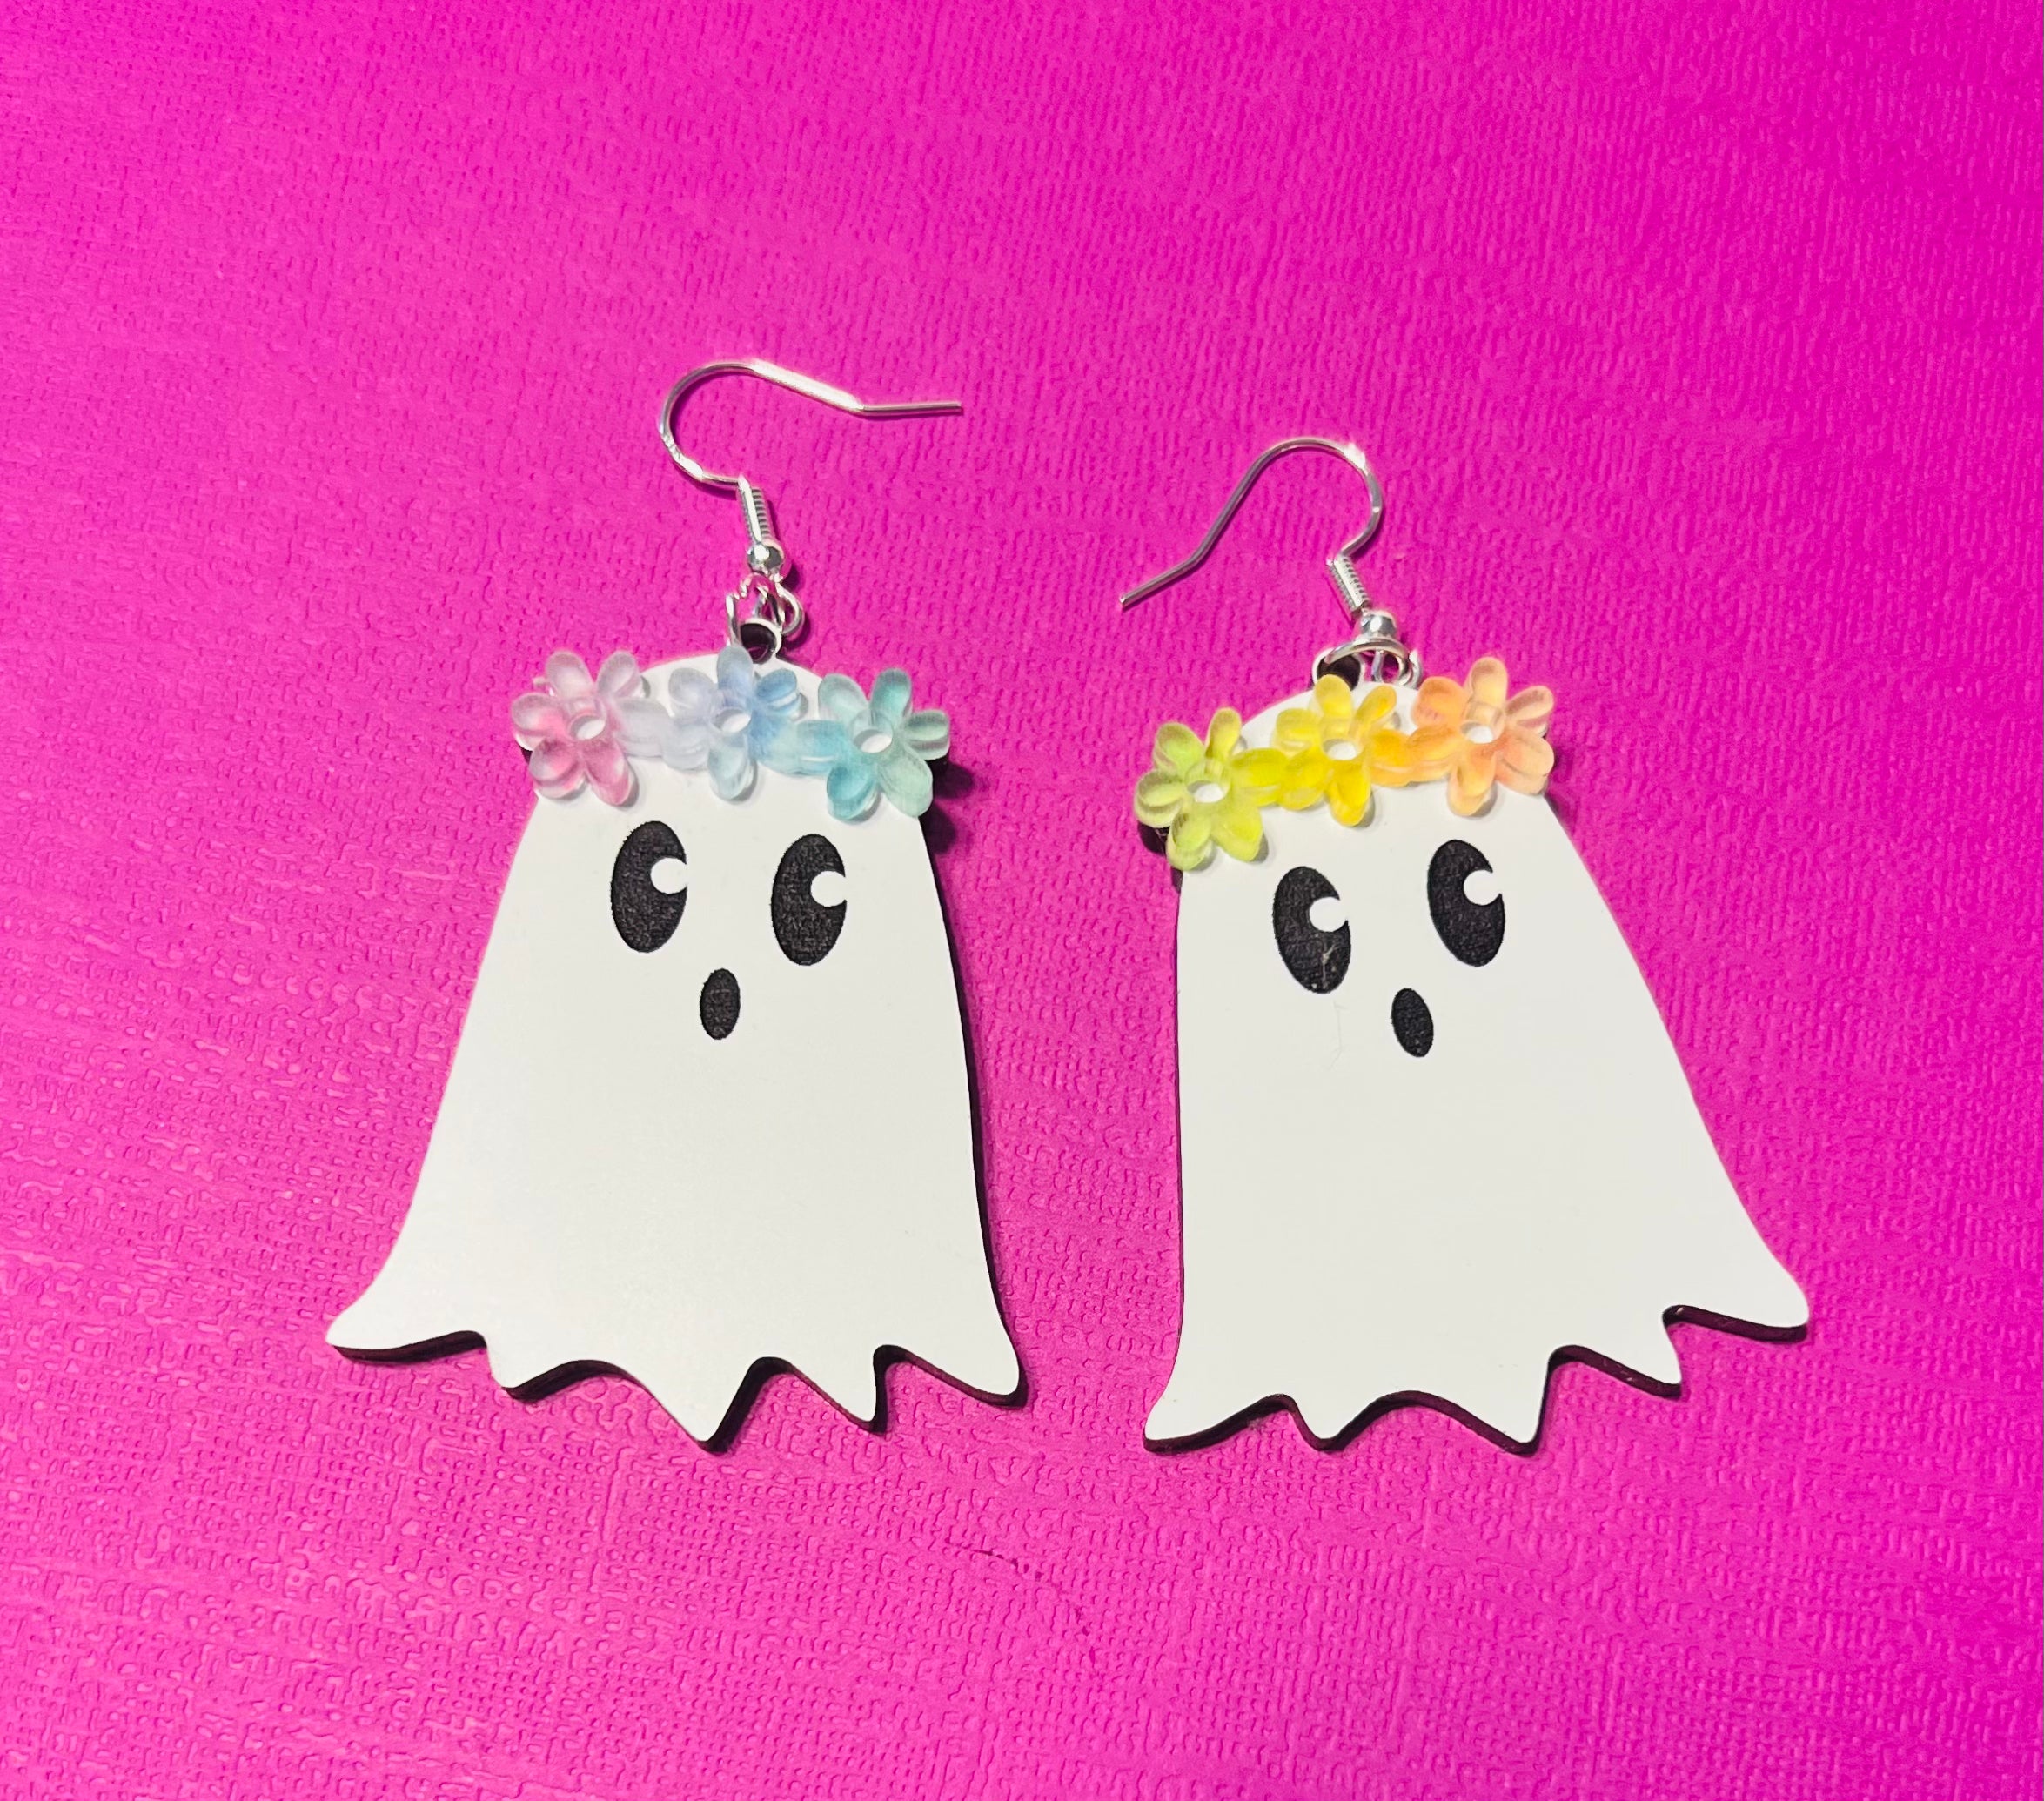 Rainbow Ghouls earrings